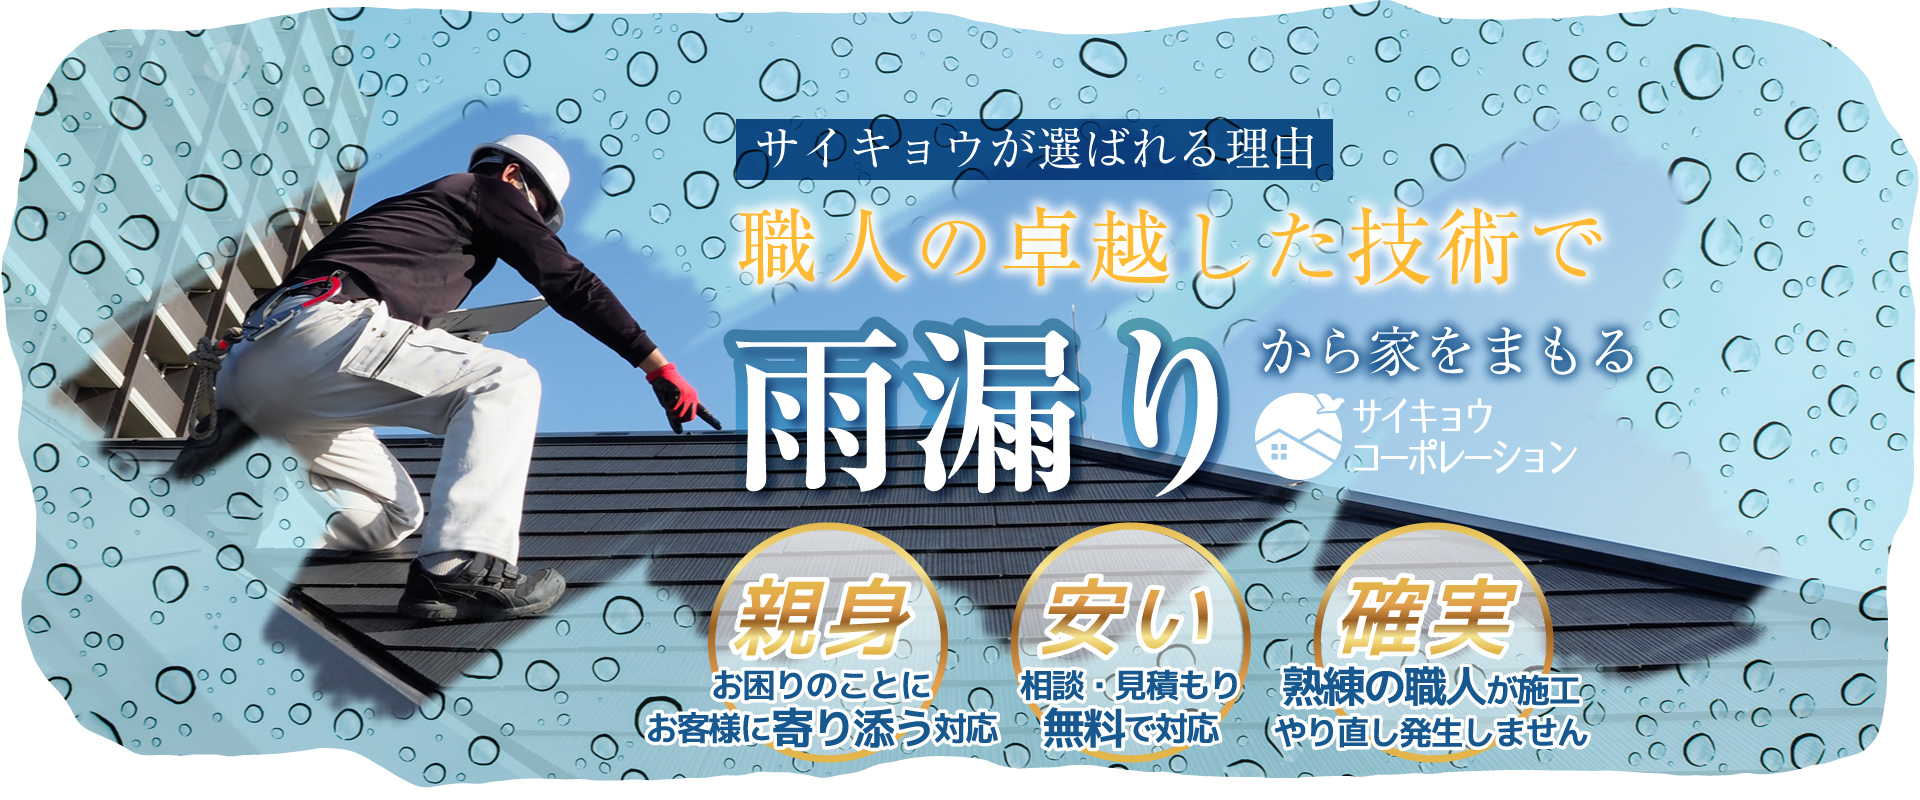 大阪の雨漏り修理ならサイキョウコーポレーション